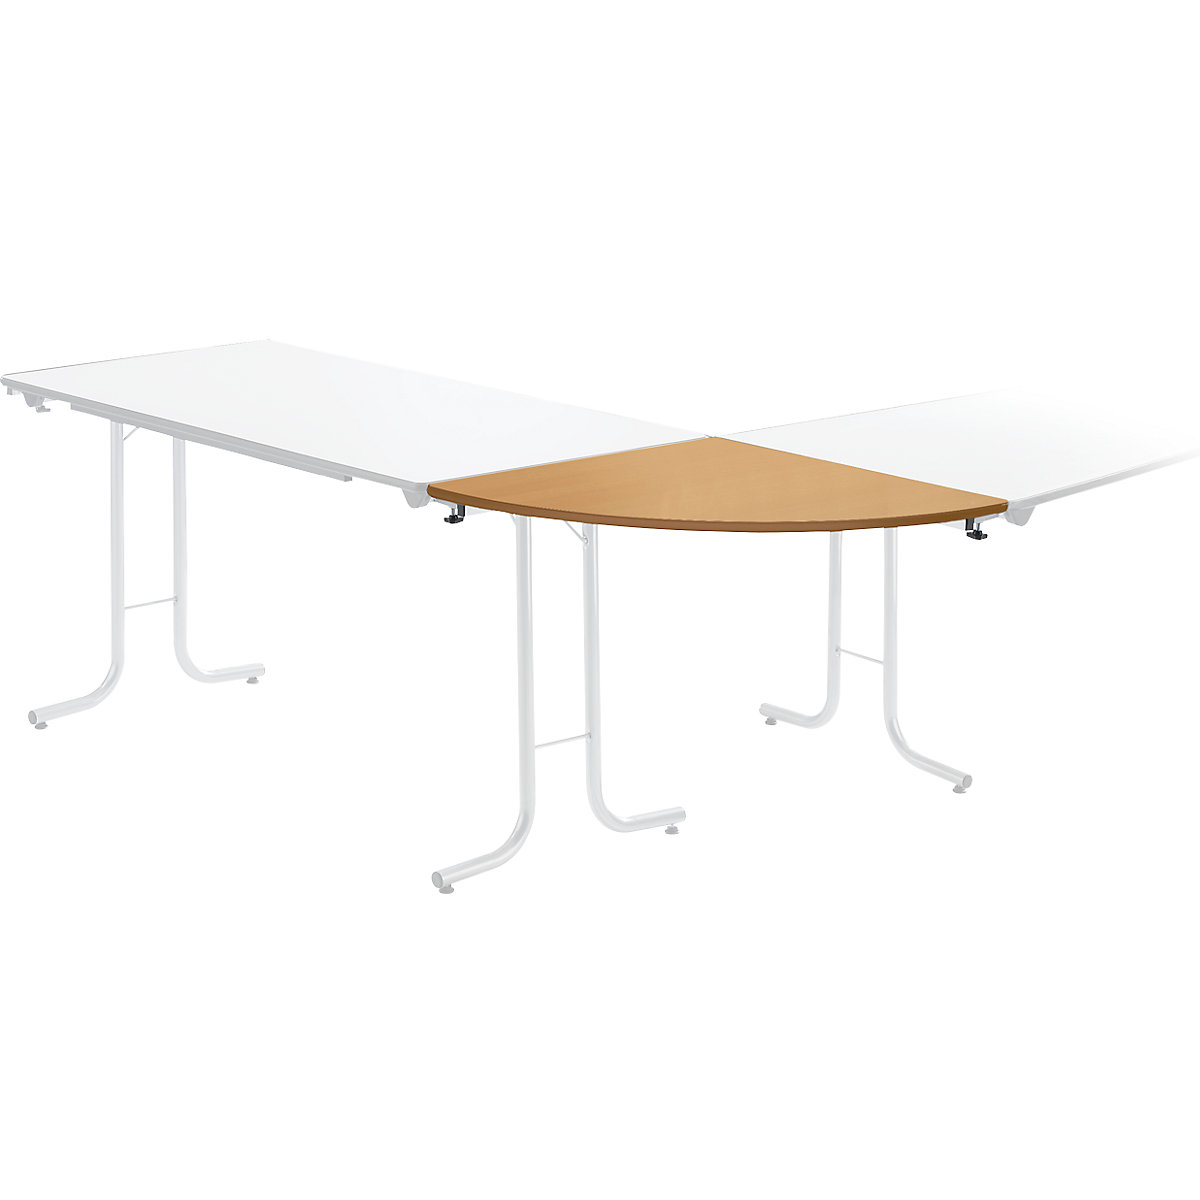 Prídavný stôl ku sklápaciemu stolu, tvar dosky štvrťkruh, 700 x 700 mm, podstavec strieborná, doska vzor buk-5